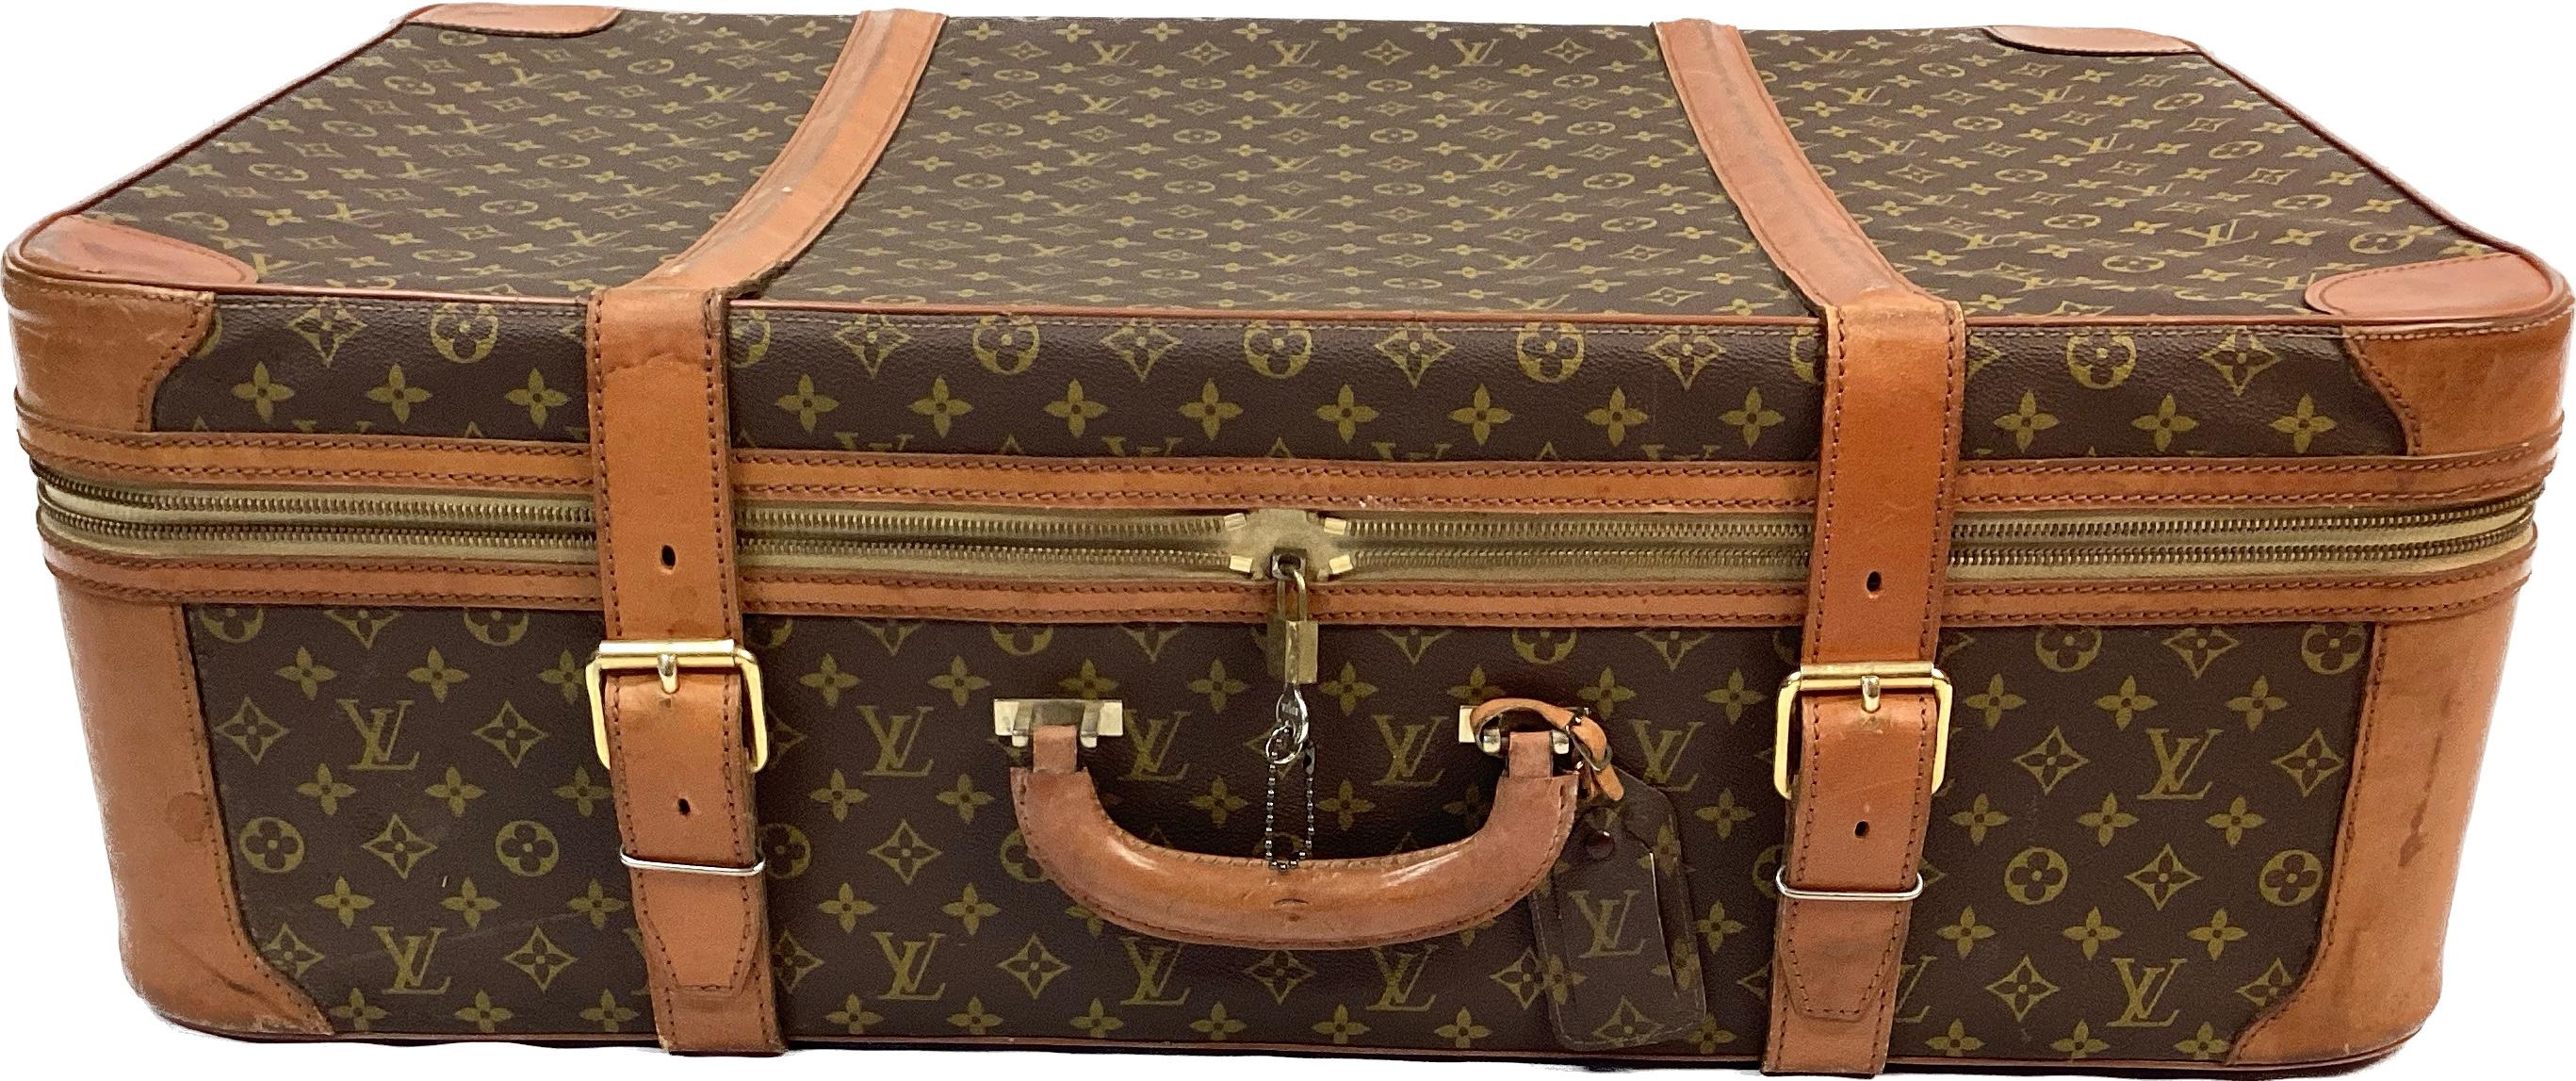 vintage louis vuitton suitcase